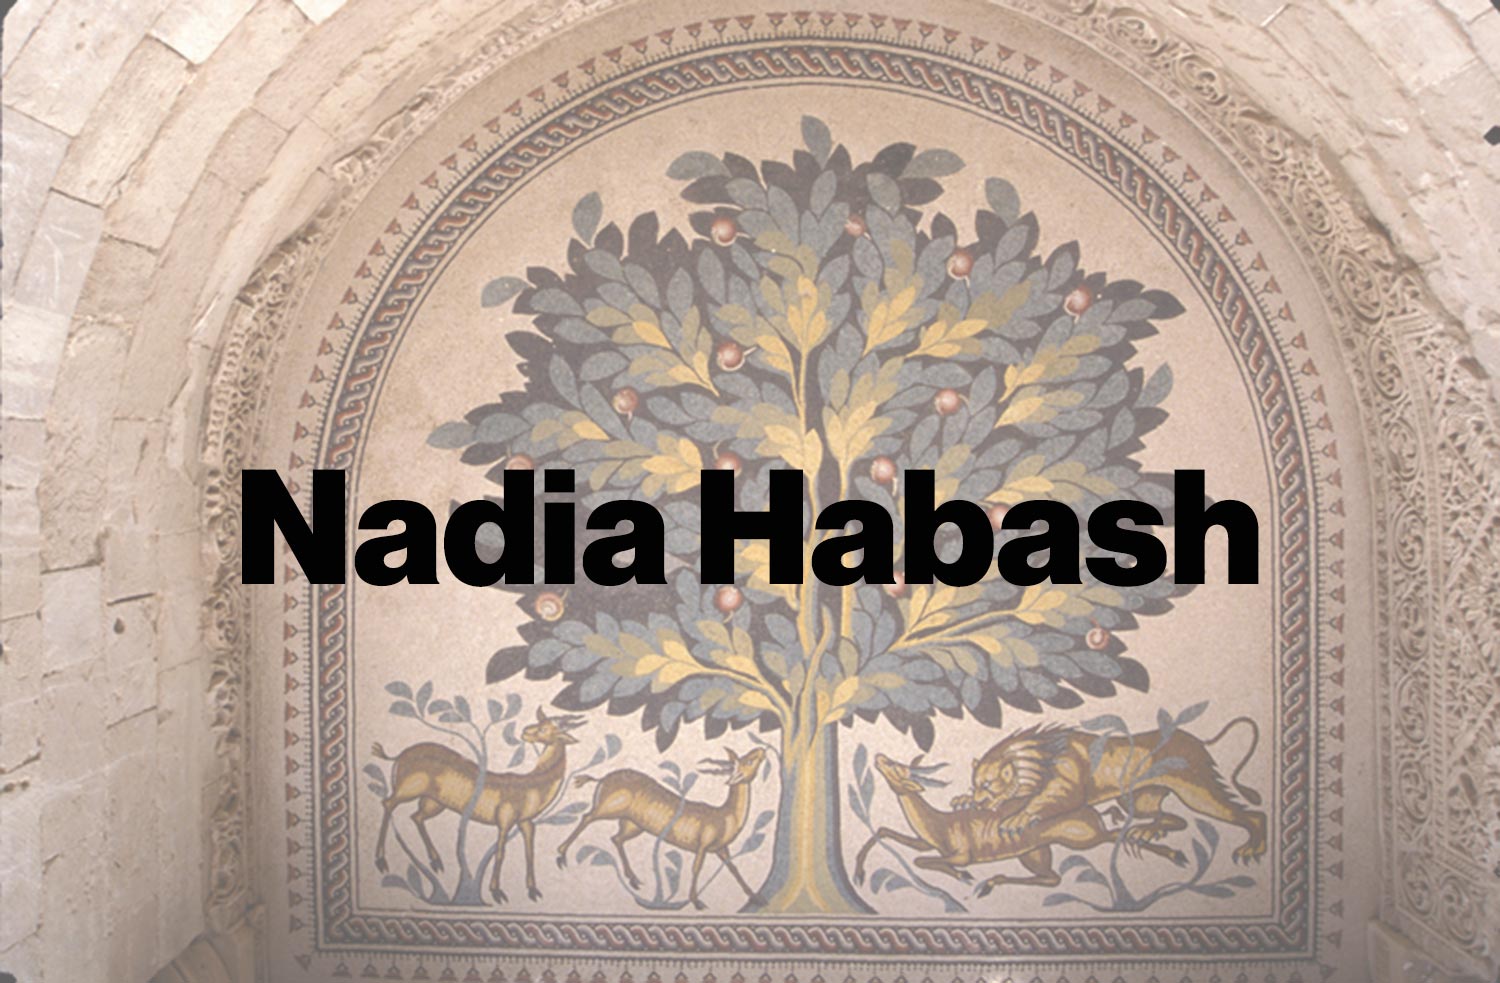 Nadia Habash